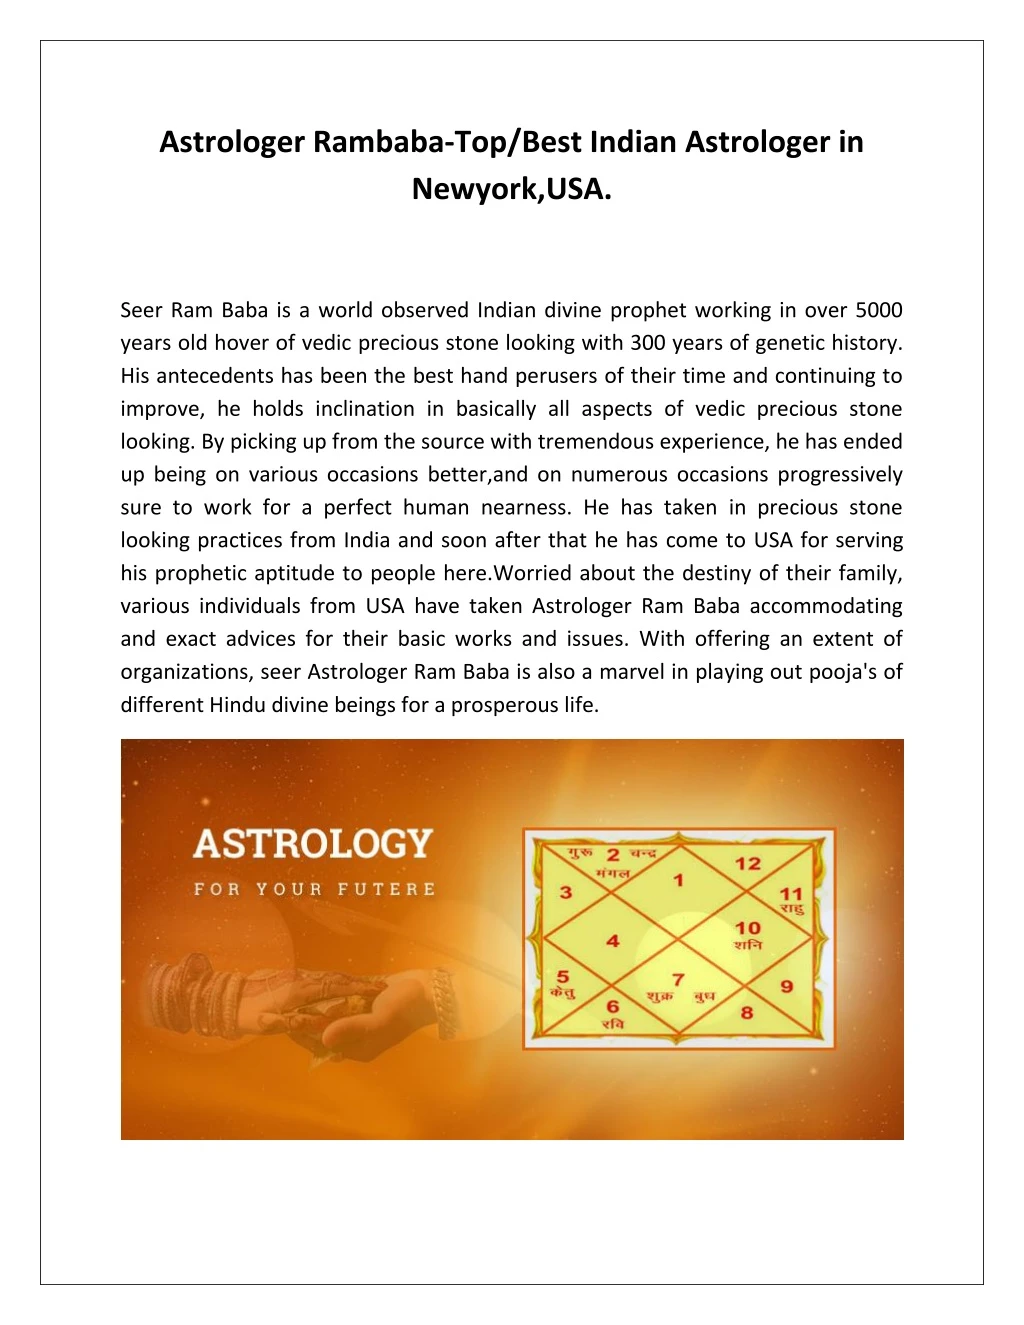 astrologer rambaba top best indian astrologer